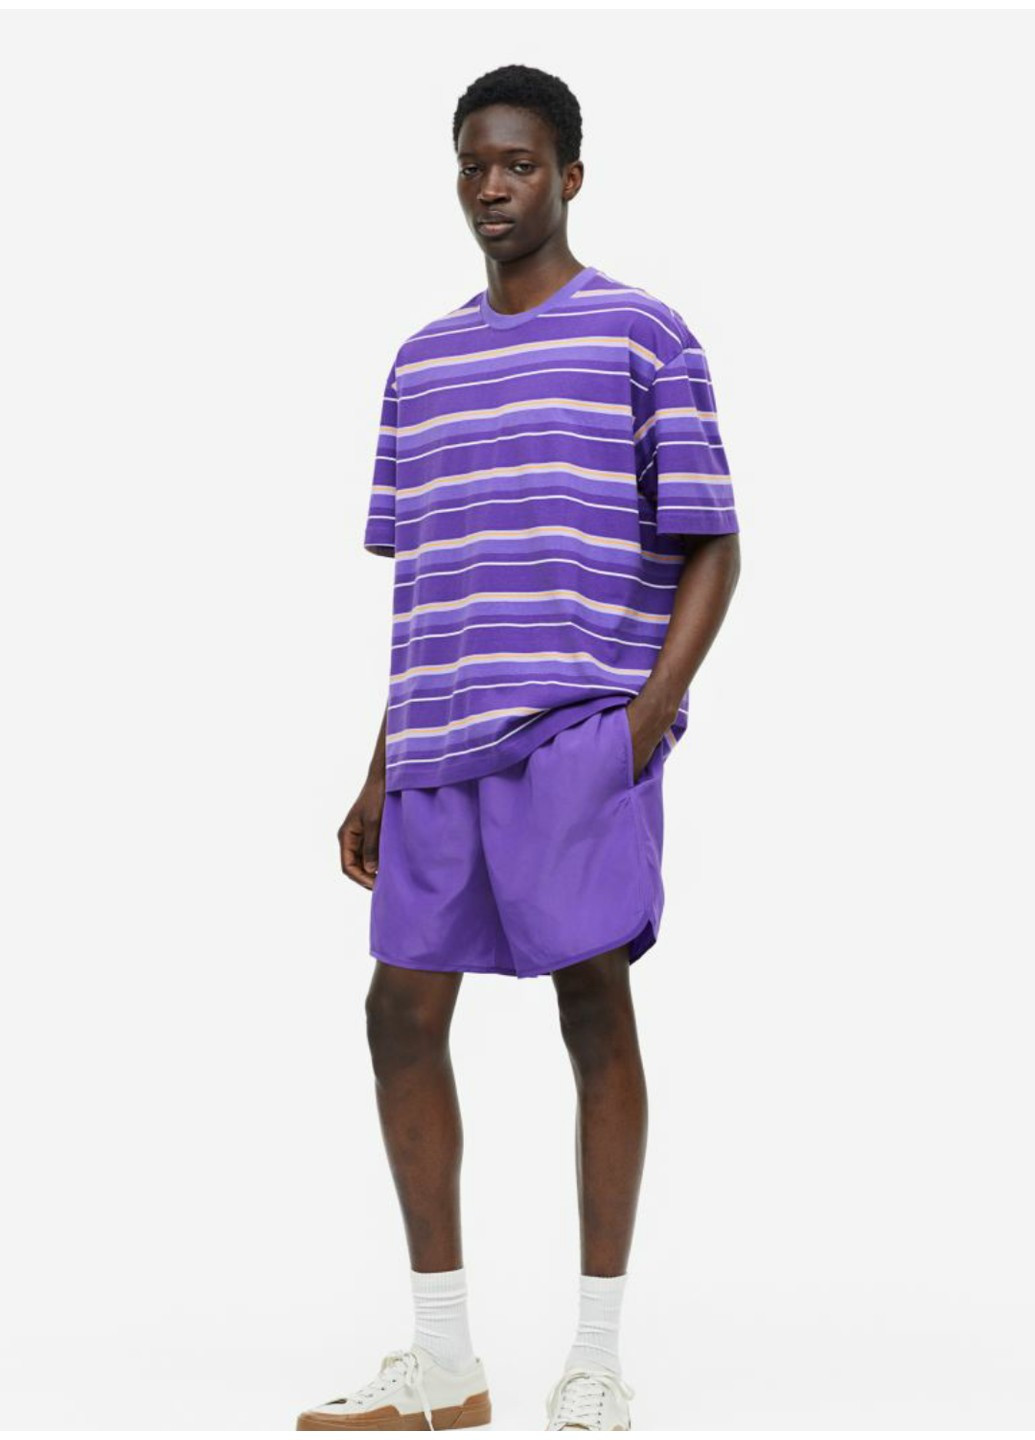 Фиолетовая мужская футболка regular fit (55817) s фиолетовая H&M